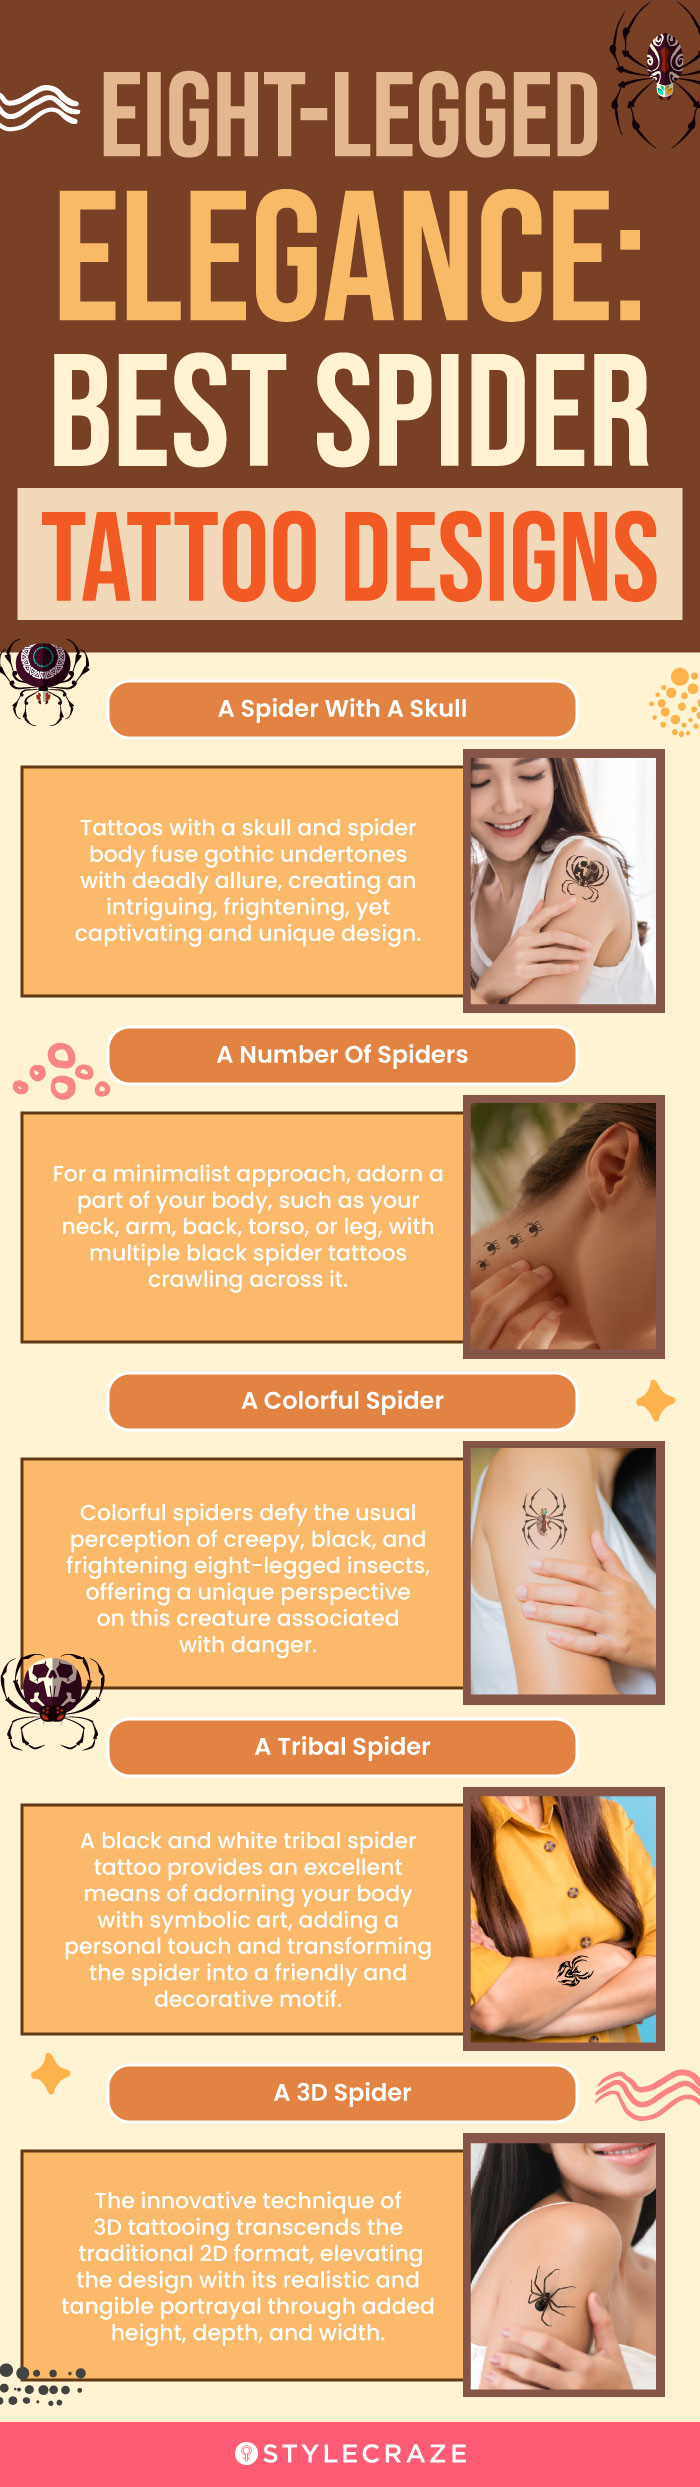 eight legged elegance best spider tattoo designs (infographic)